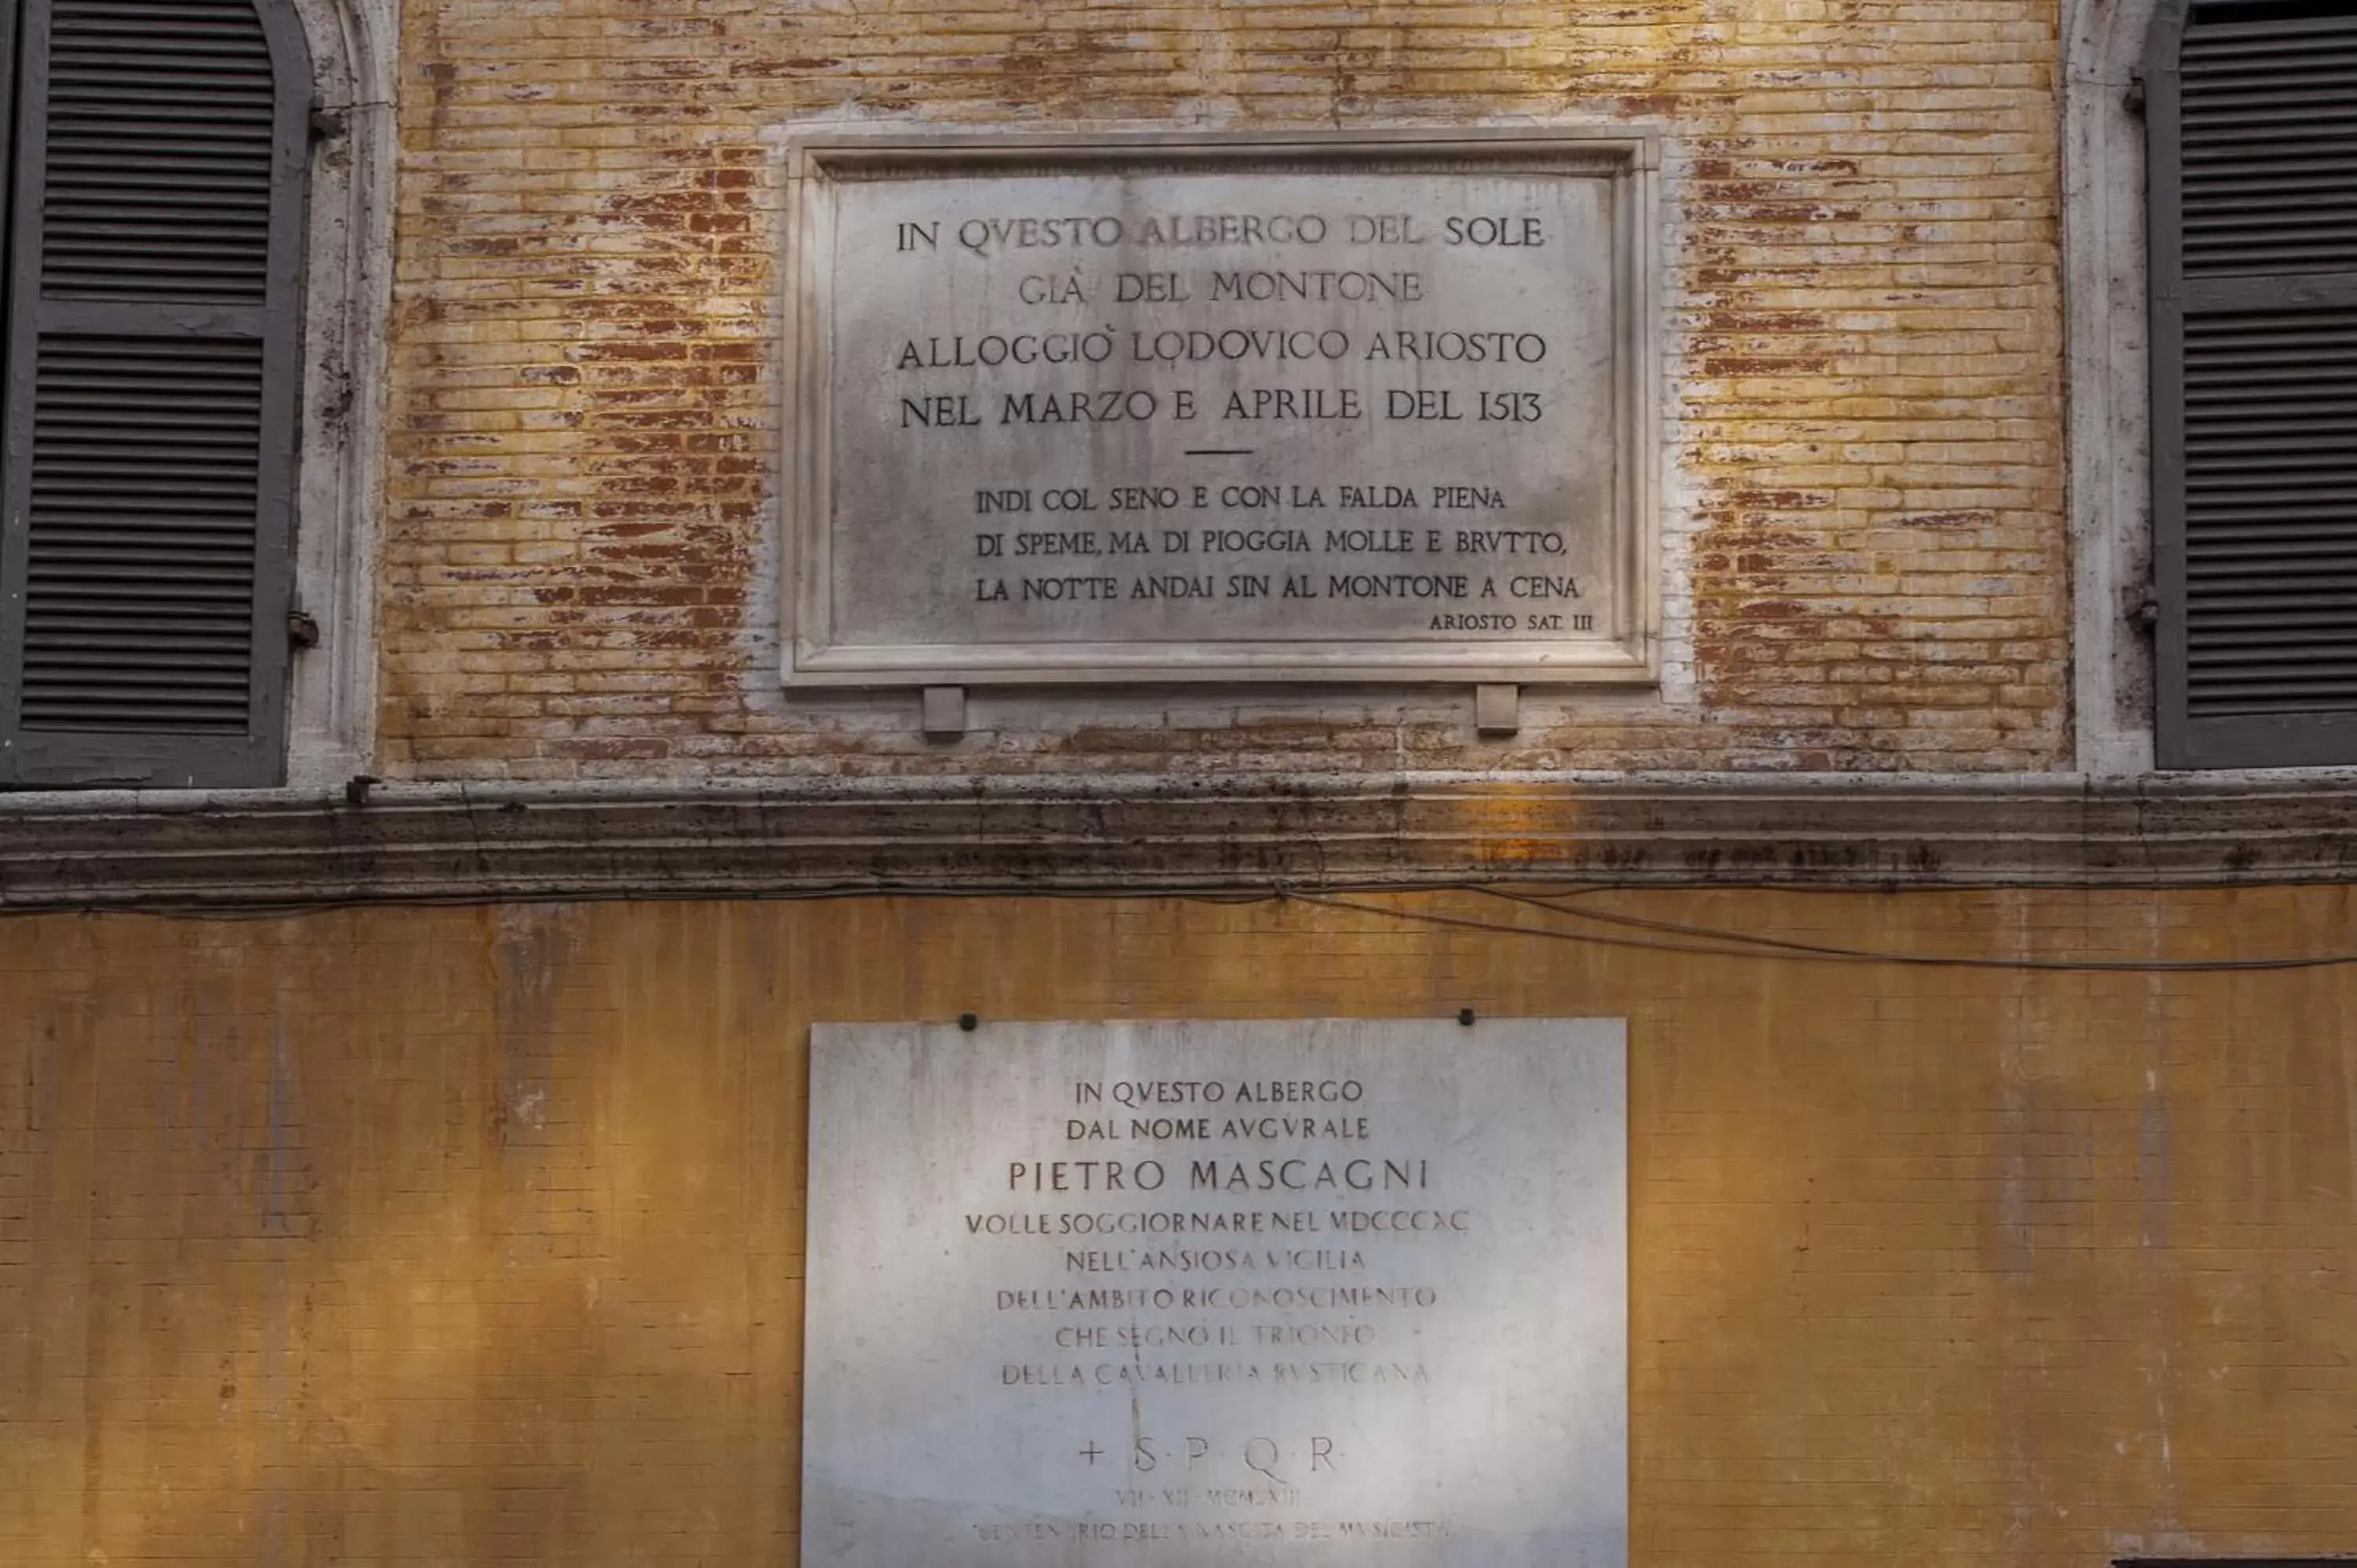 Facade/entrance in Antico Albergo del Sole al Pantheon